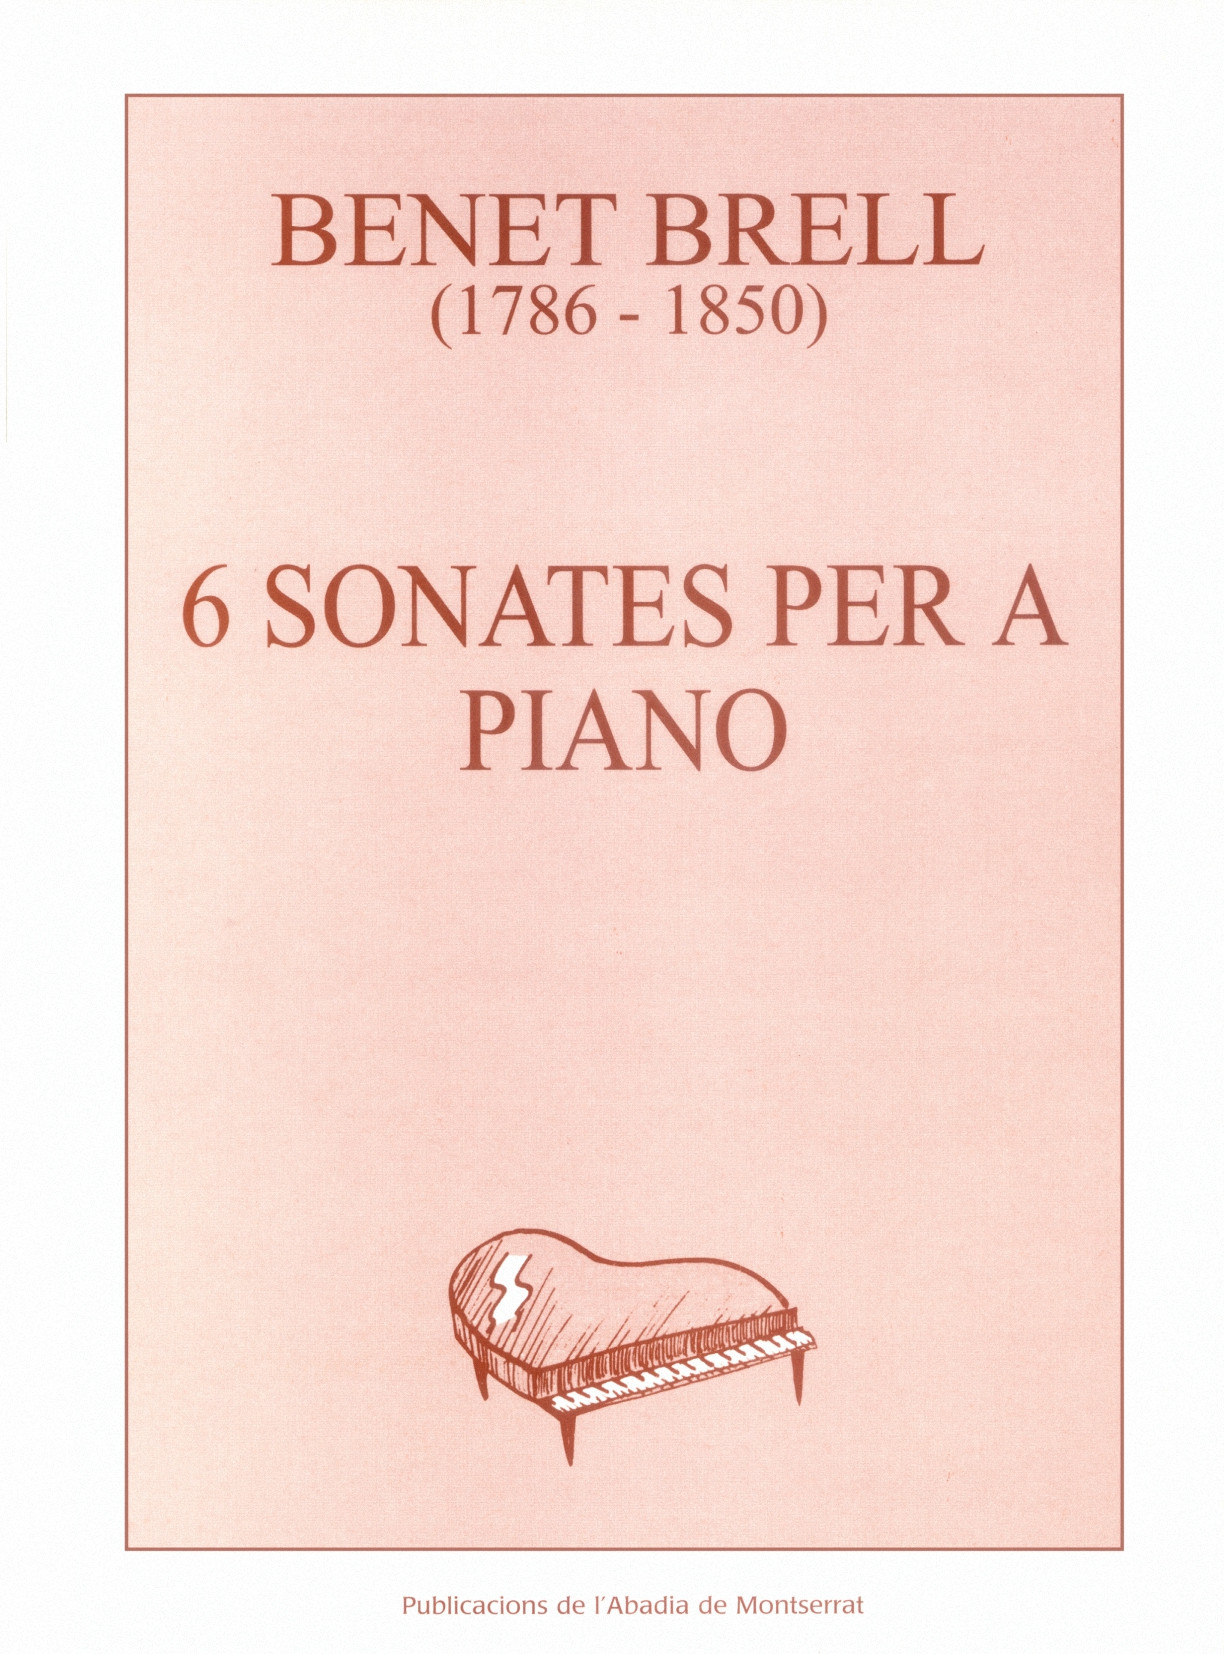 Benet Brell